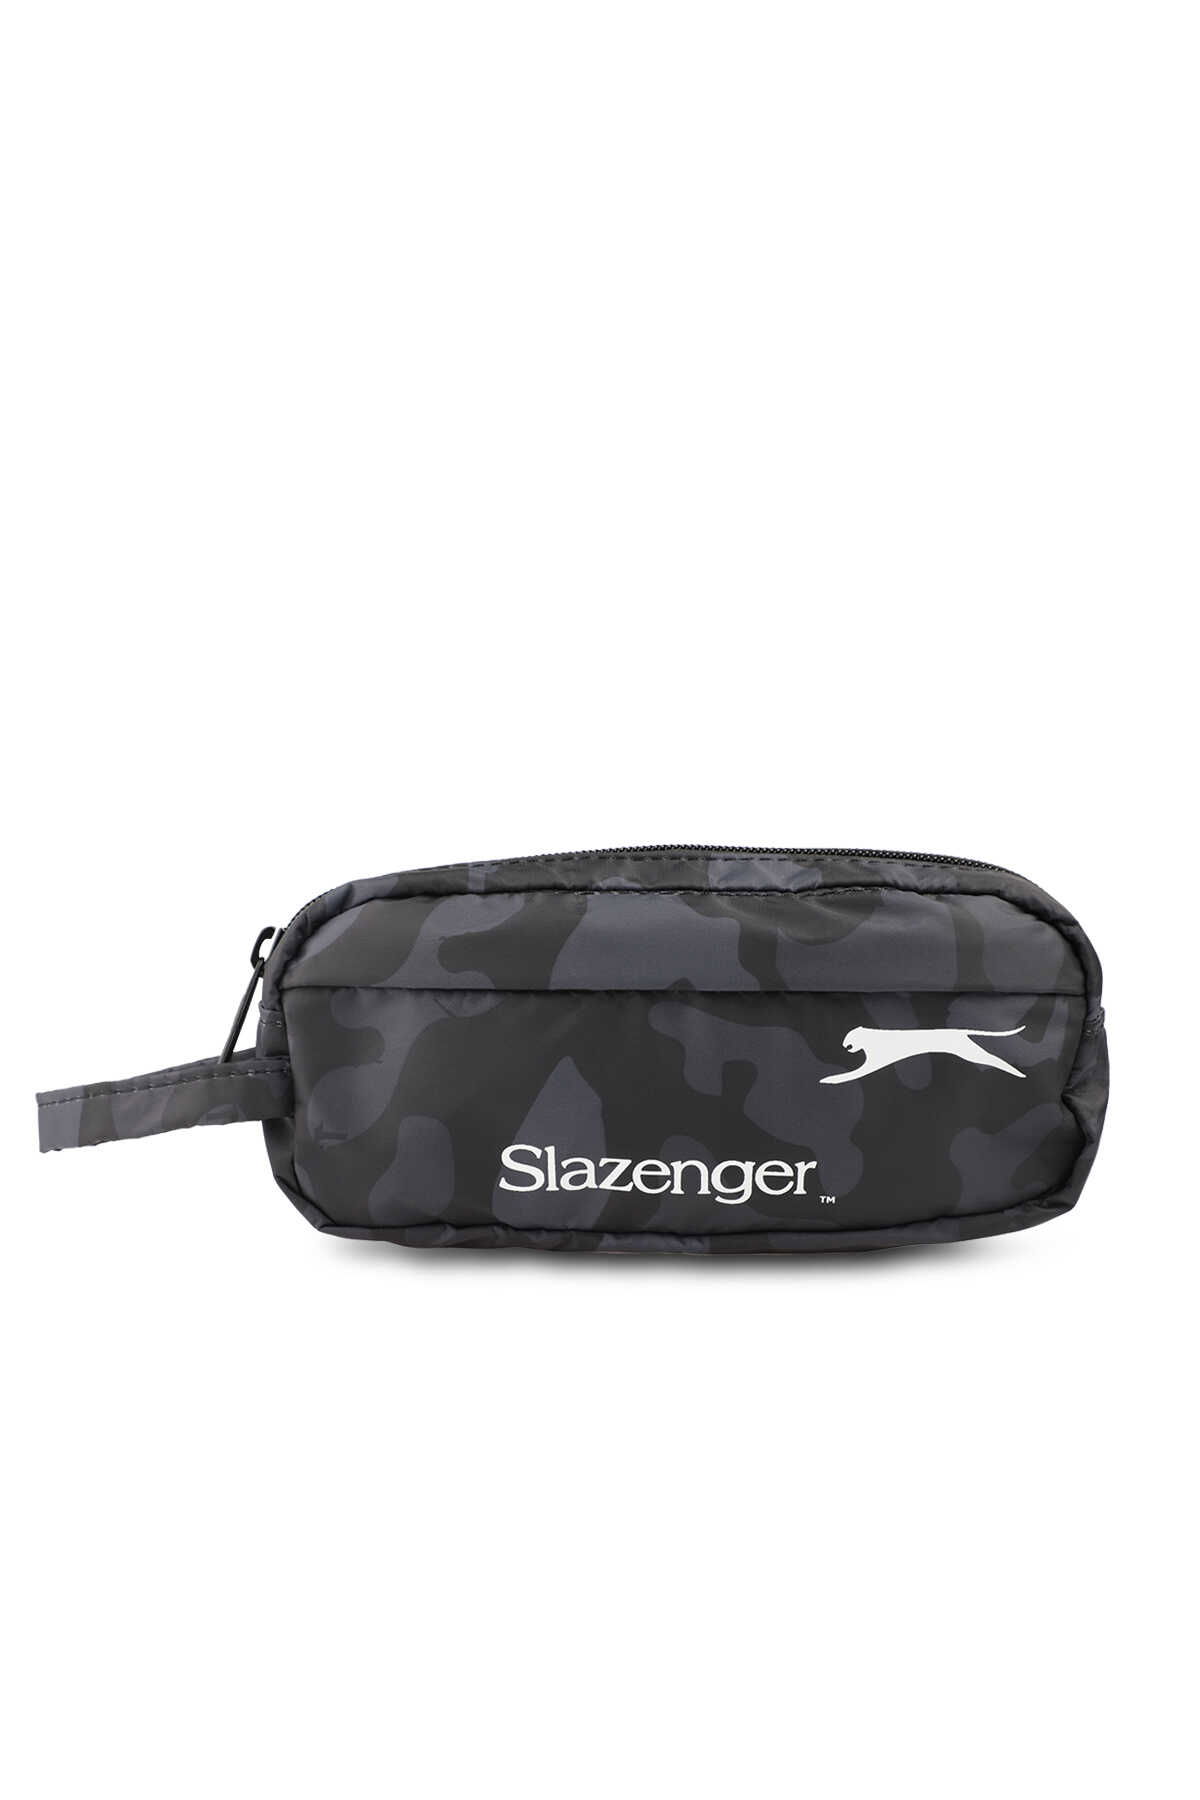 Slazenger - Slazenger 22200 Unisex Kalem Çantası Kamuflaj